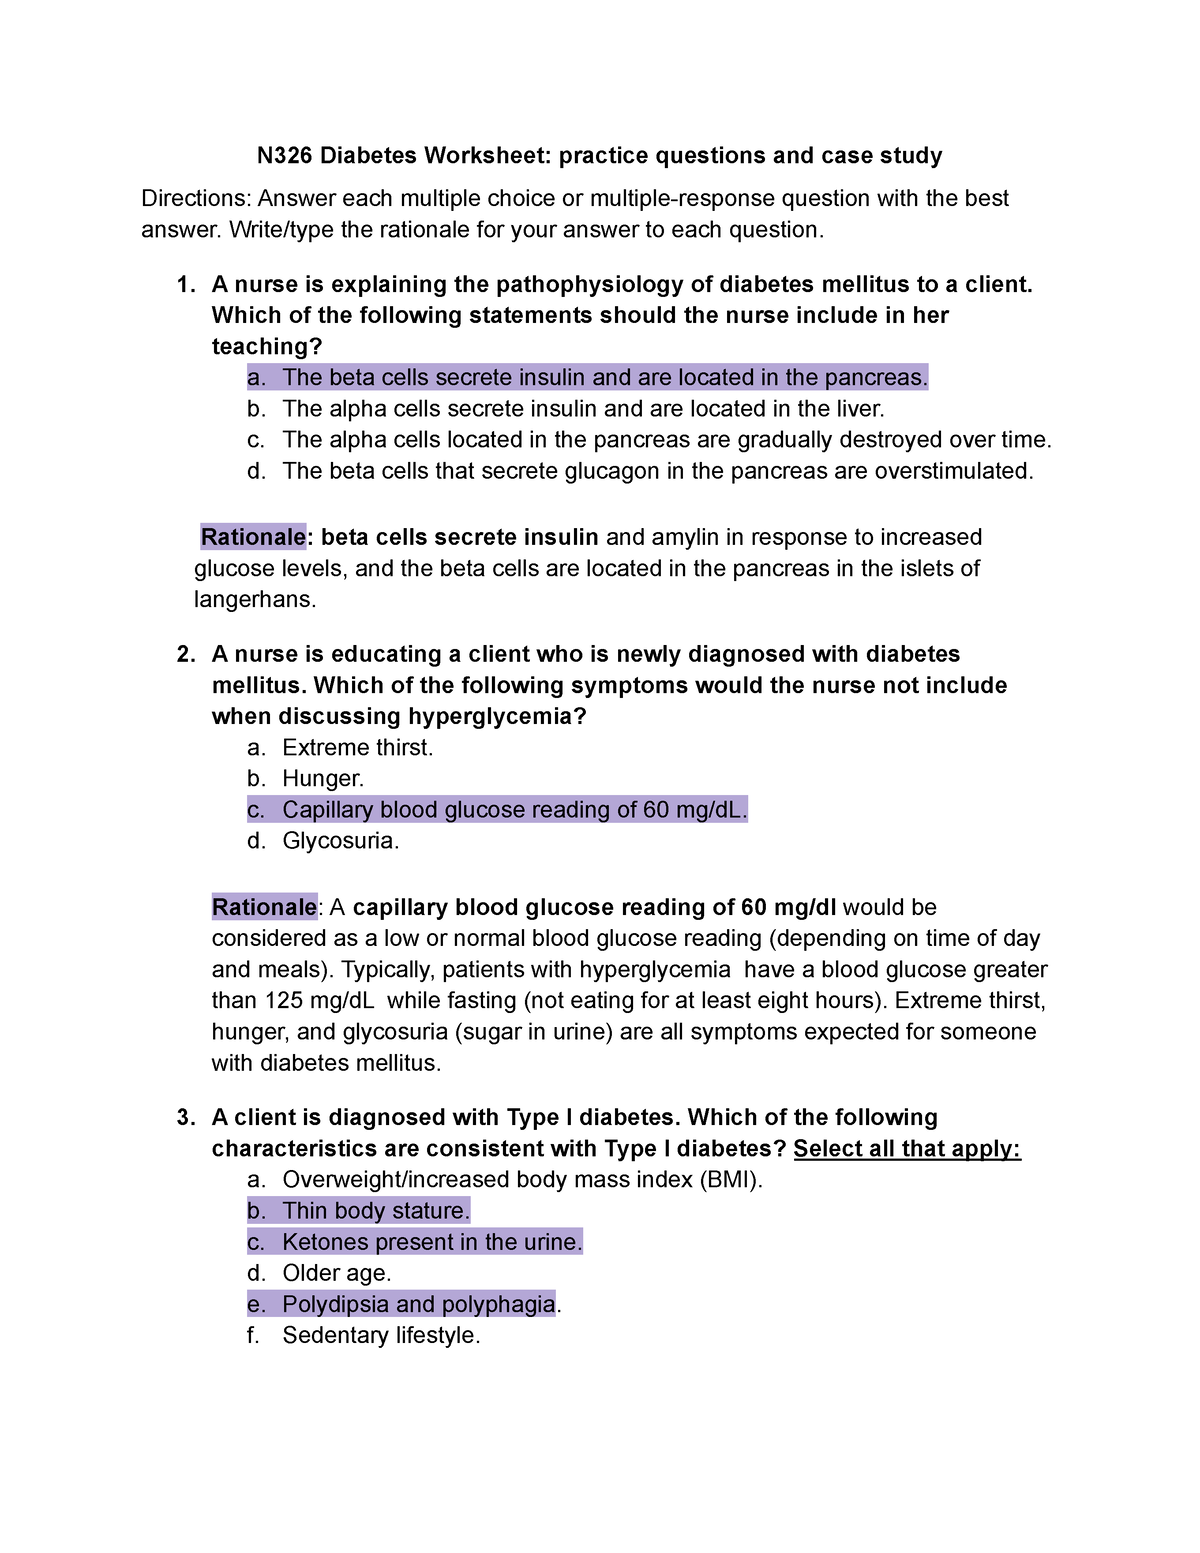 n326-diabetes-worksheet-practice-questions-and-case-study-n326